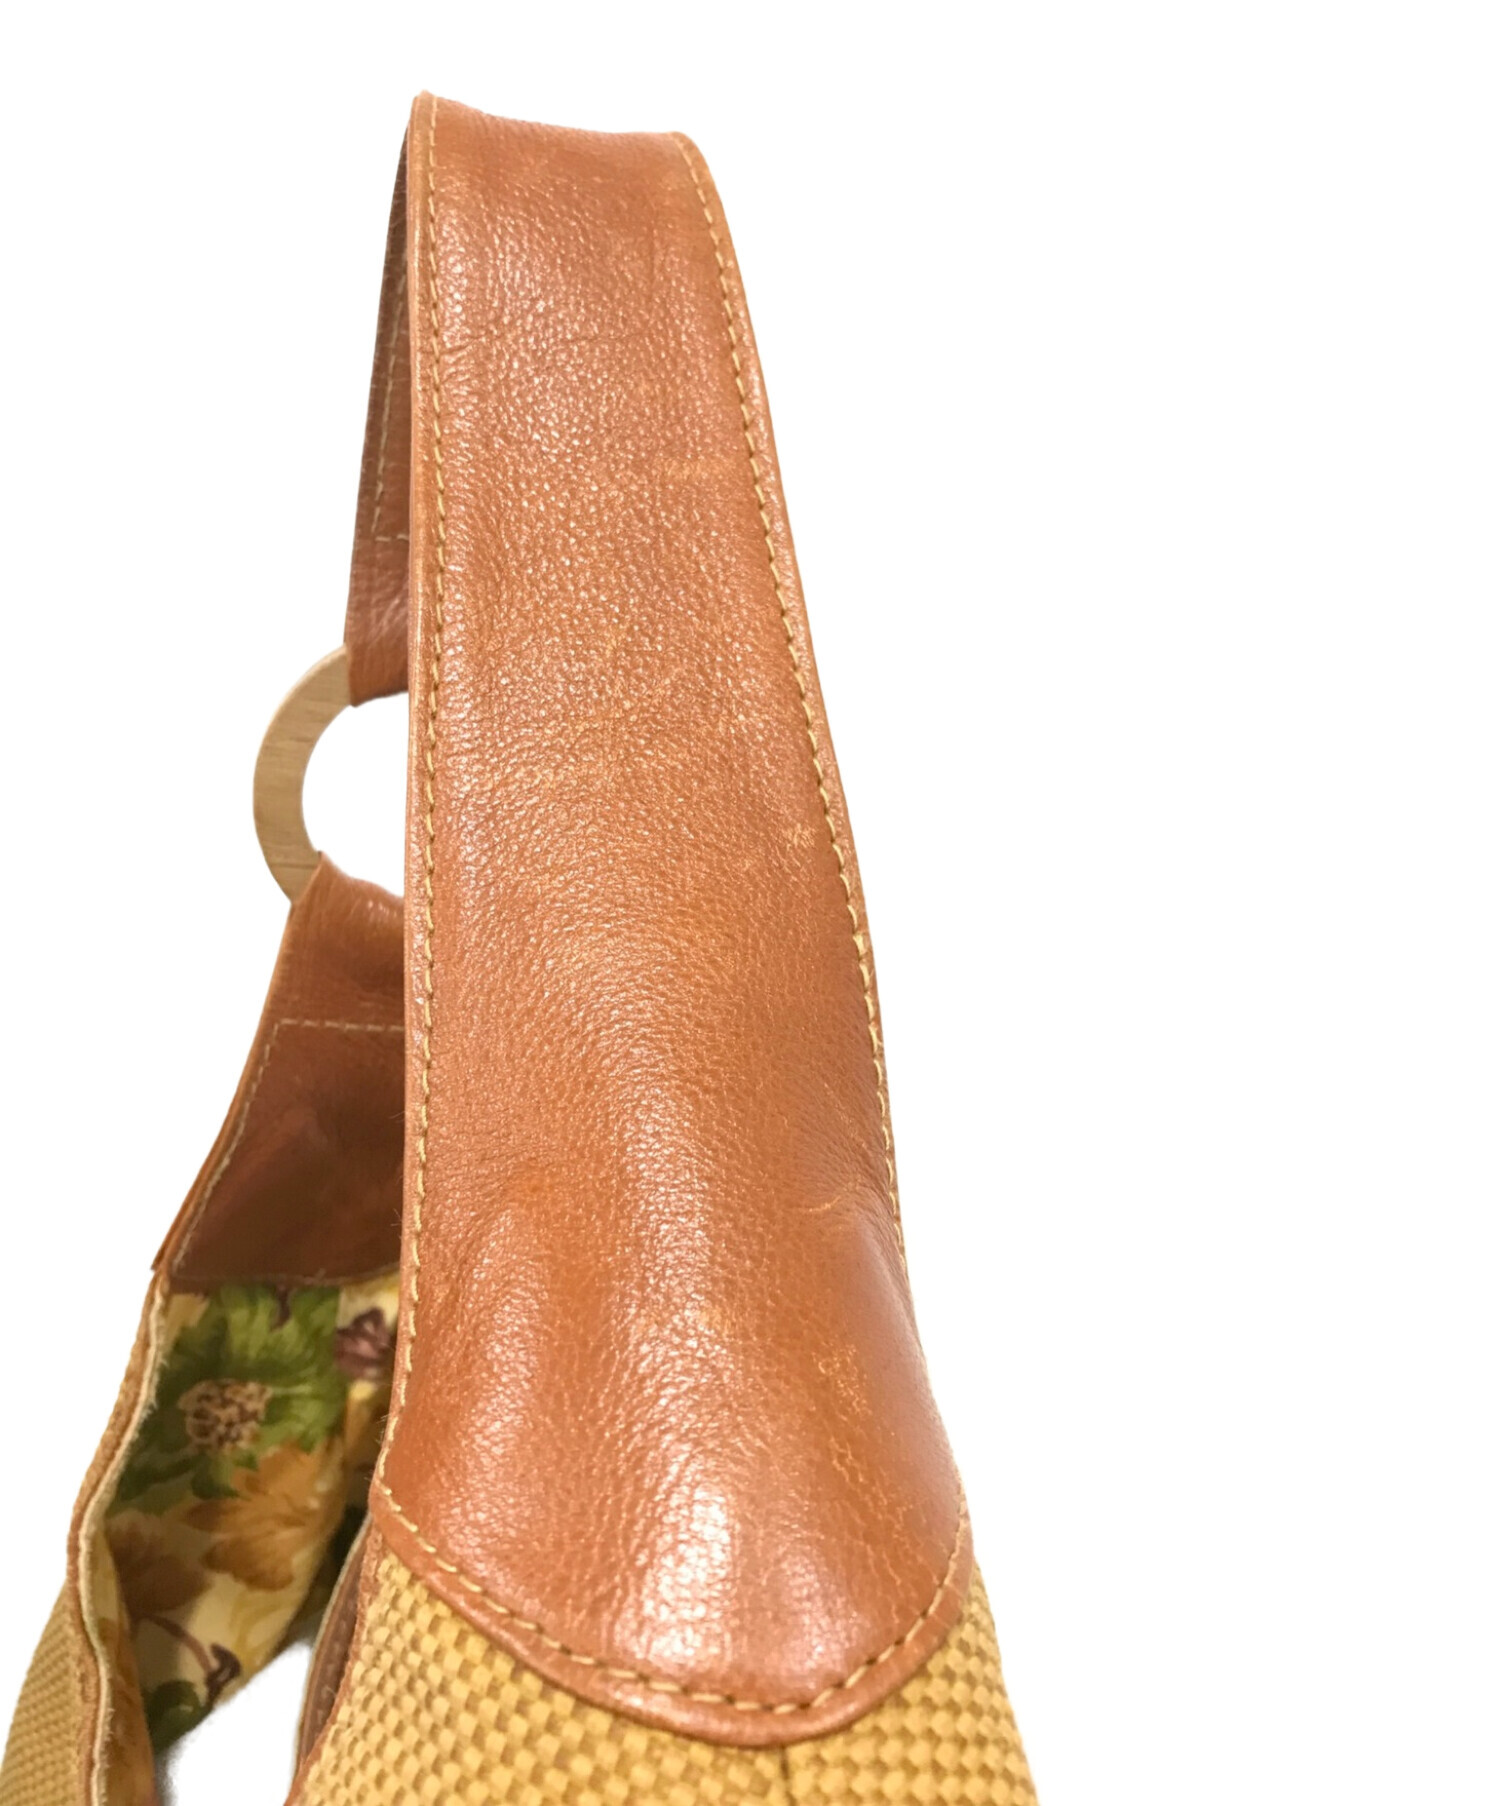 マザーハウス／MOTHERHOUSE バッグ ショルダーバッグ 鞄 レディース 女性 女性用レザー 革 本革 ブラウン 茶  MG12231 Soft Tuck Hand